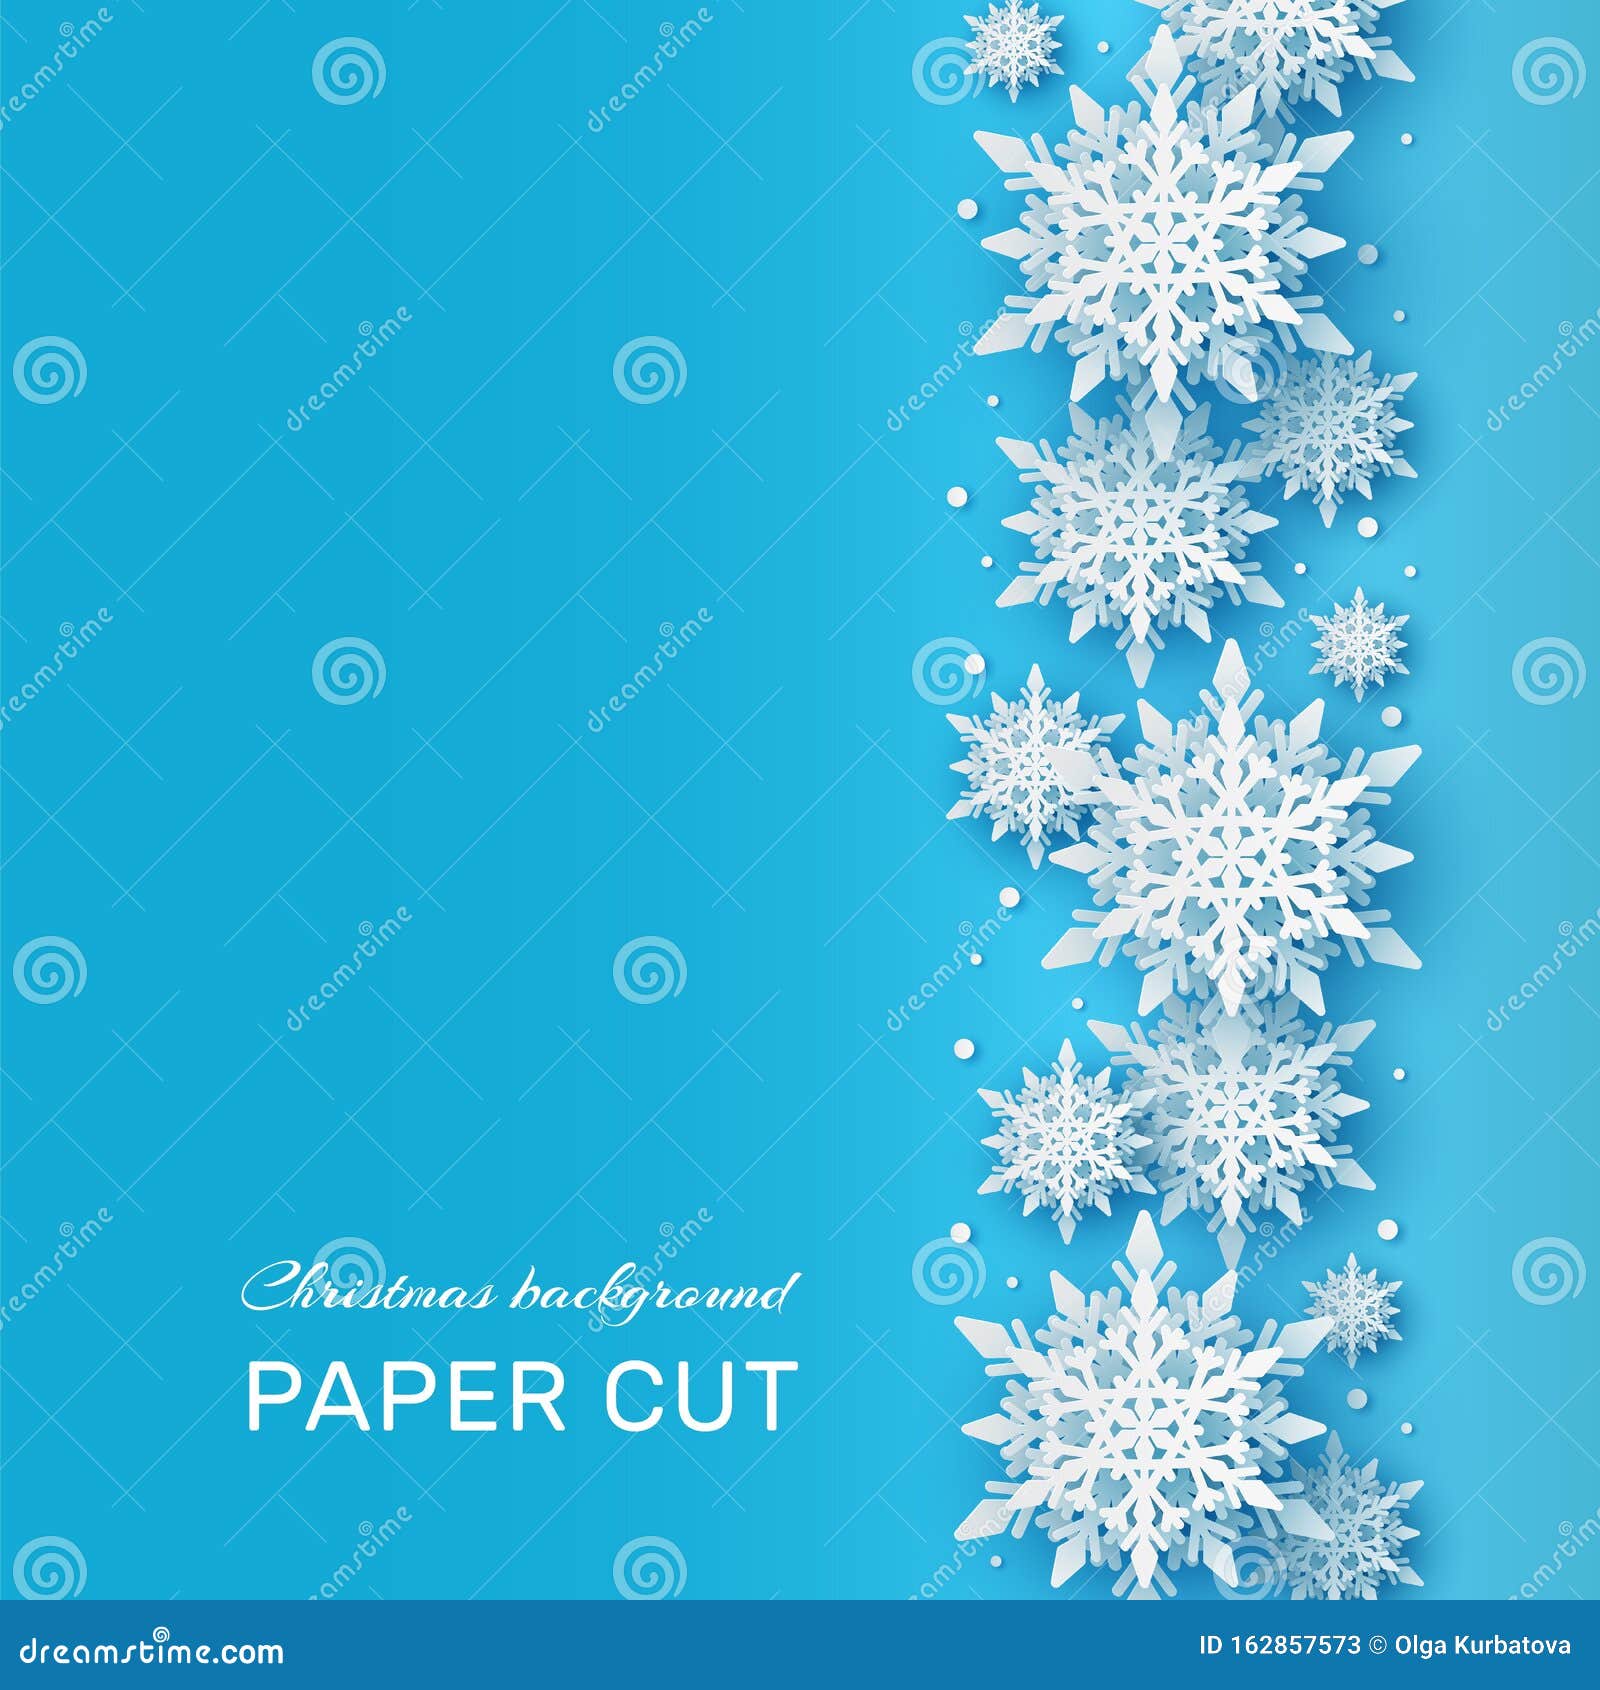 Giáng sinh đã sắp đến rồi, và bạn đang muốn tìm kiếm các hình nền thật đẹp để trang trí máy tính của mình? Hãy xem hình ảnh này! Với một hình cắt giấy tuyết trắng 3D đầy tinh tế trên nền xanh lấp lánh, chiếc hình nền này sẽ mang lại cho bạn một mùa Giáng sinh ấm áp và thật tuyệt vời.